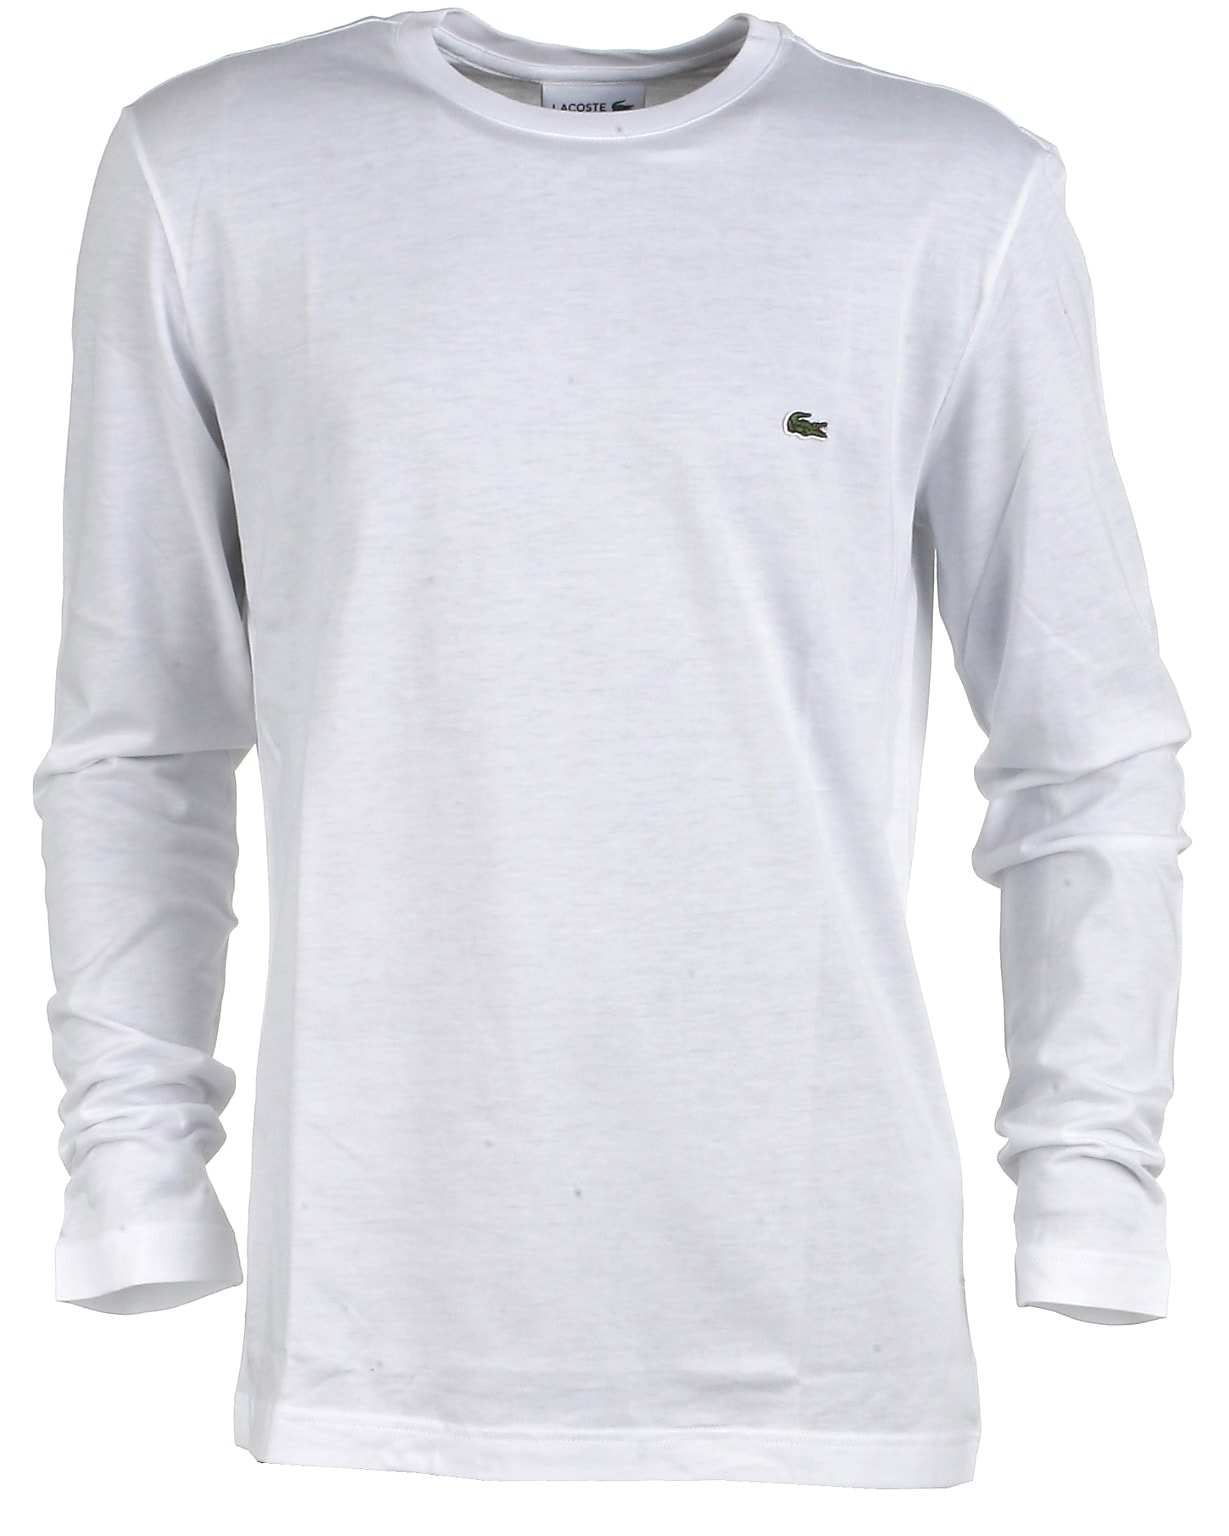 hurtig syreindhold mord Lacoste t-shirt l/s, hvid - Online shopping til drenge og piger!